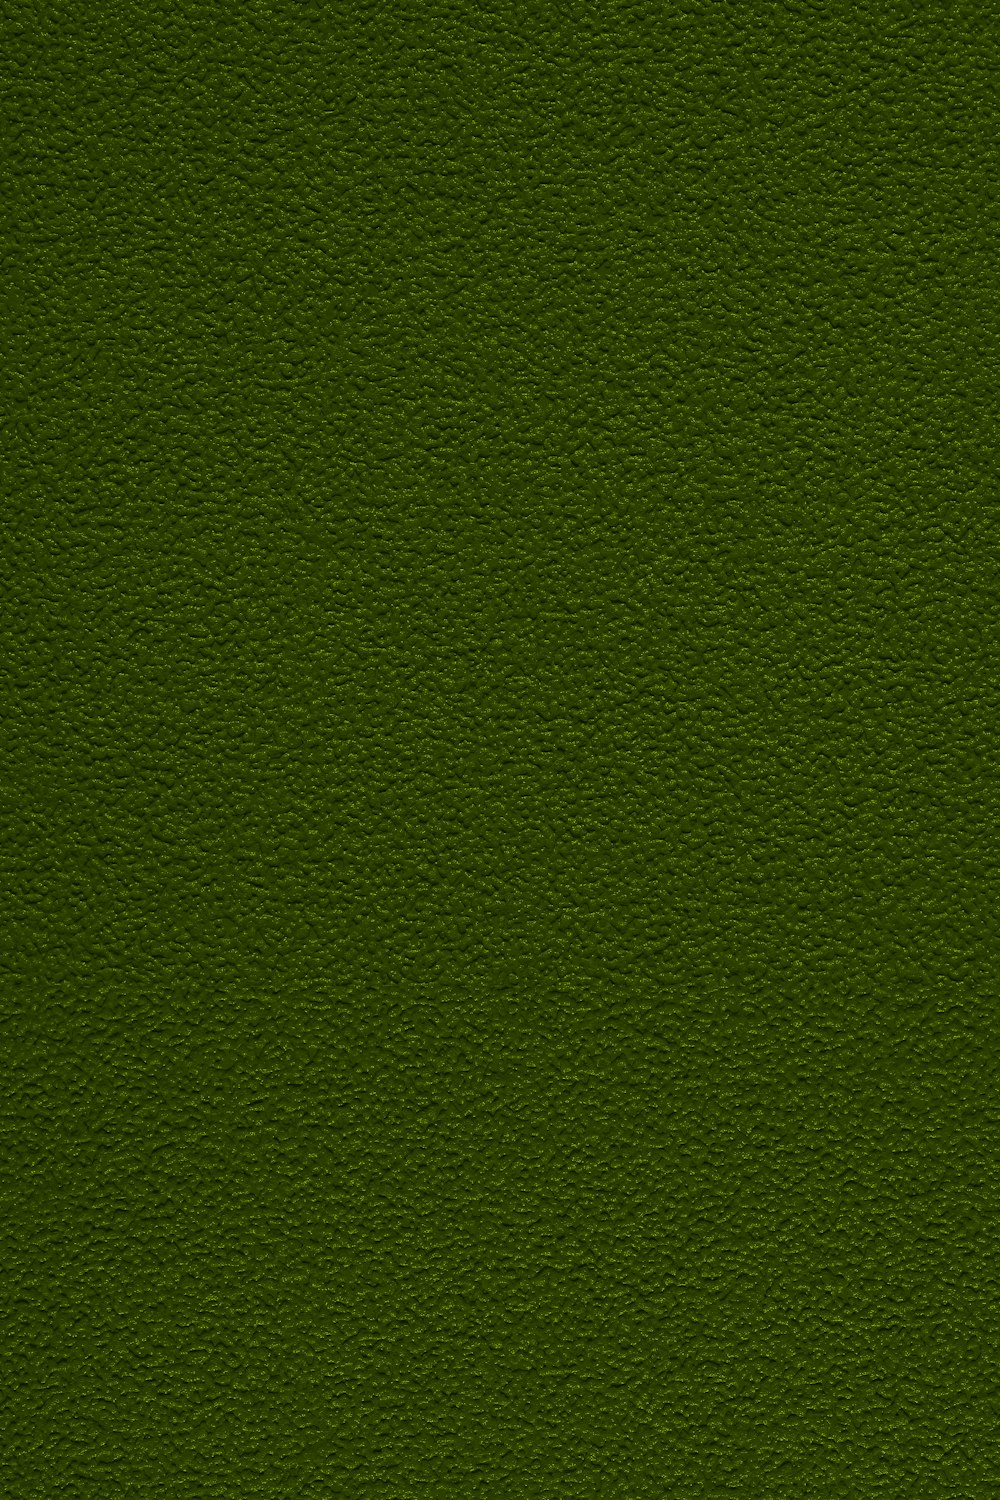 un primo piano di una superficie verde con una piccola macchia d'erba